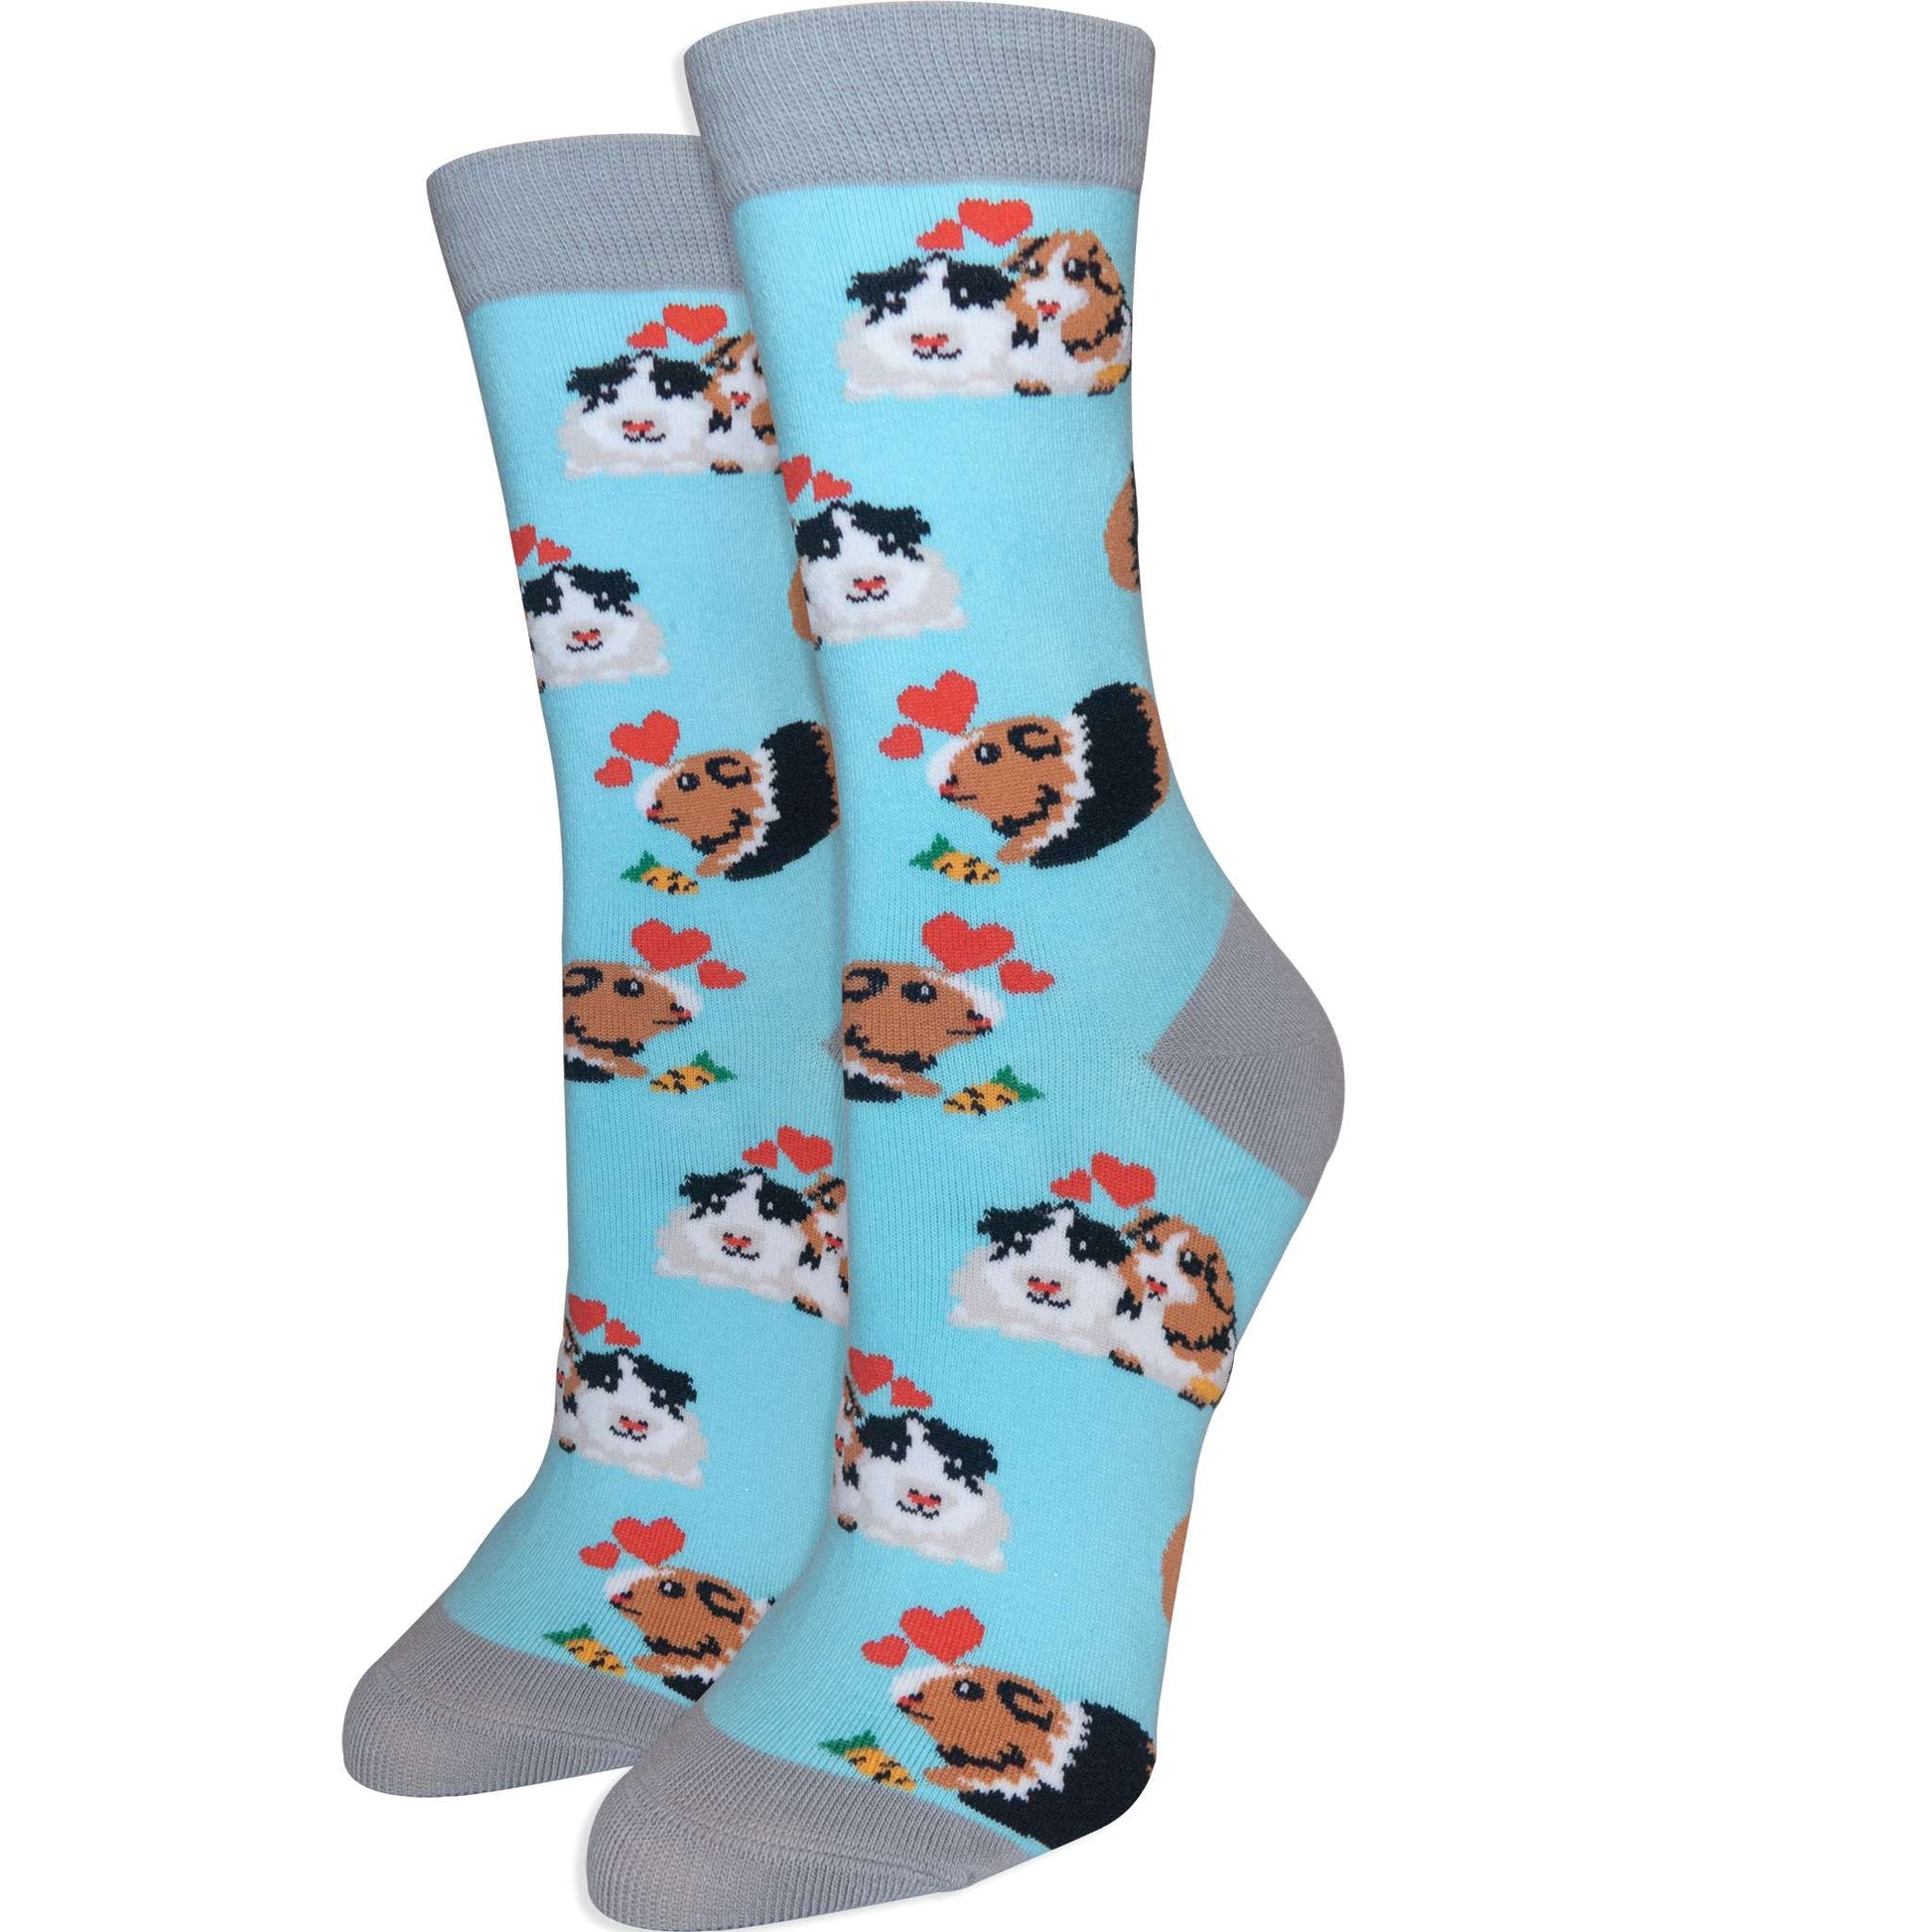 Guinea Pig - Imagery Socks